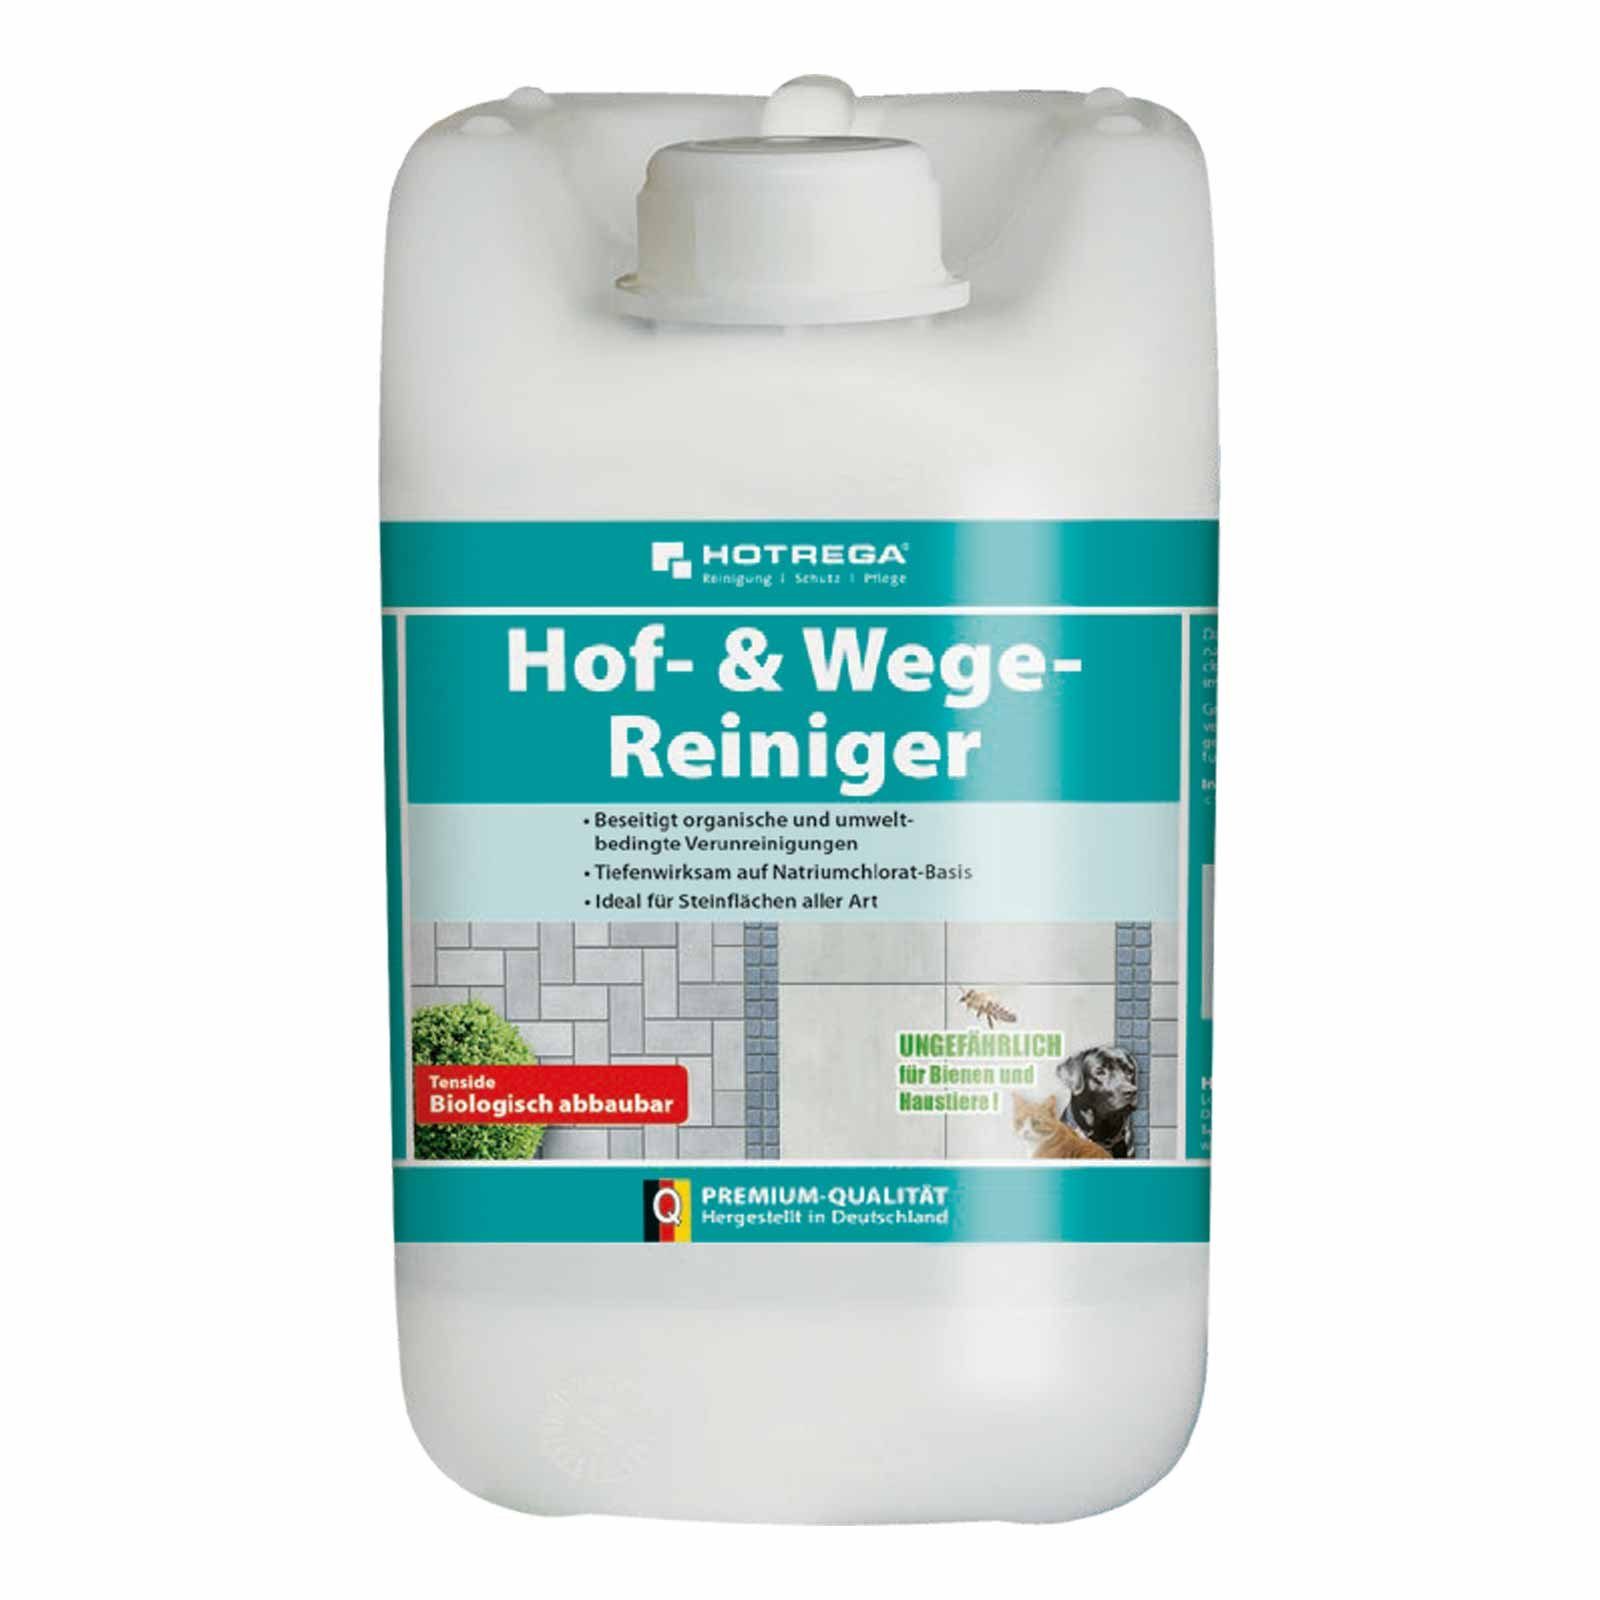 HOTREGA® Hof- & Wege-Reiniger Konzentrat 5 Liter Reinigungskonzentrat